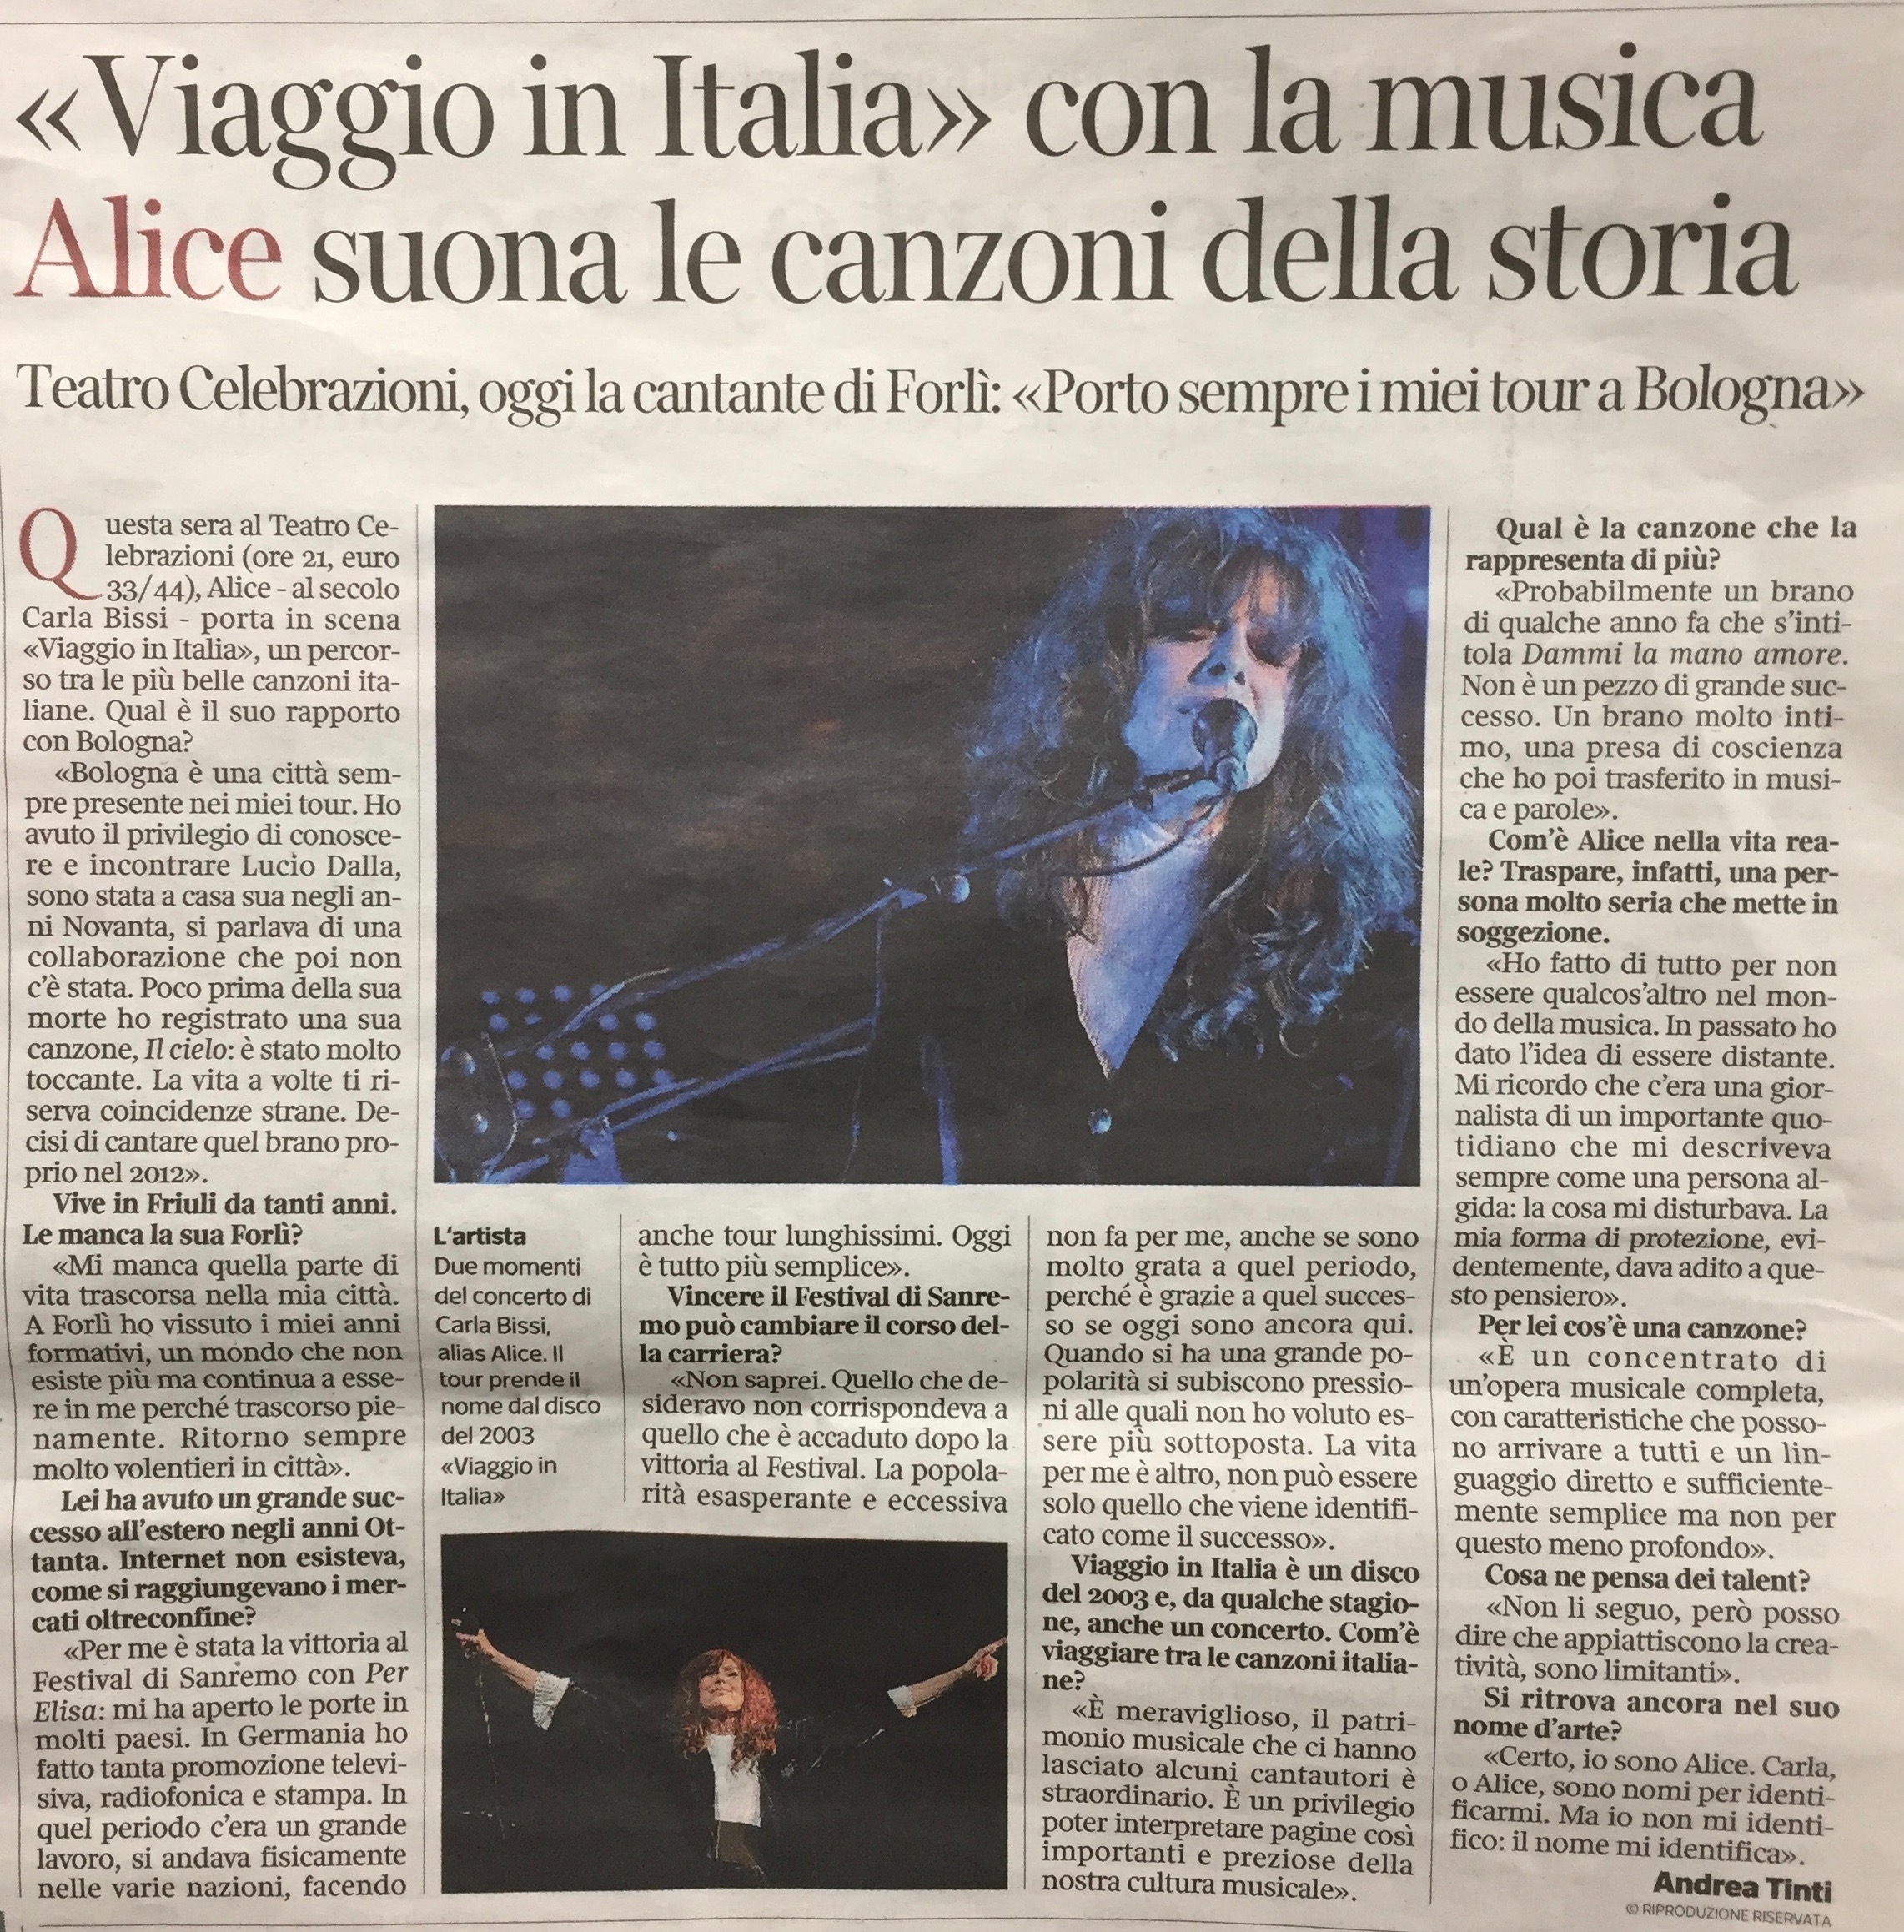 Corriere - Alice - VIAGGIO IN ITALIA - 27.03.19 Bologna